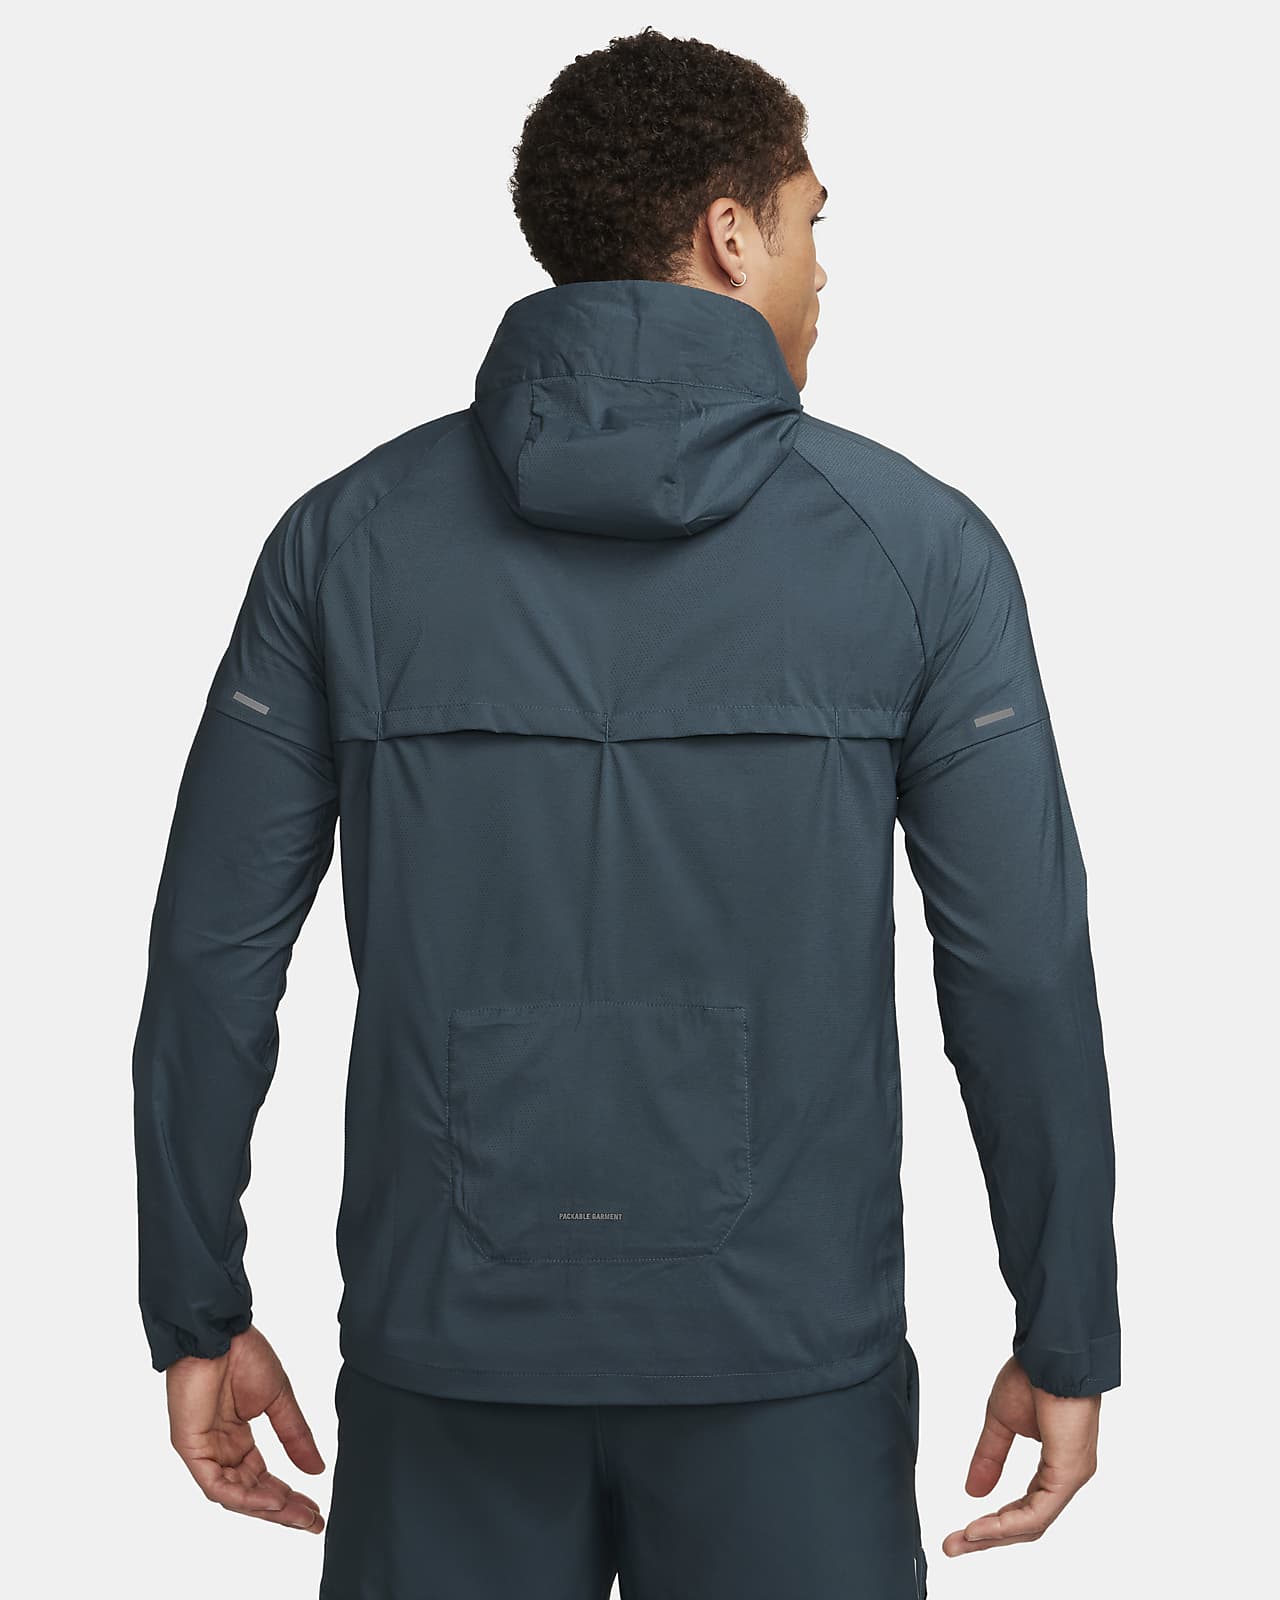 Nike Repel UV Windrunner Jacket. Men\'s Running Protection